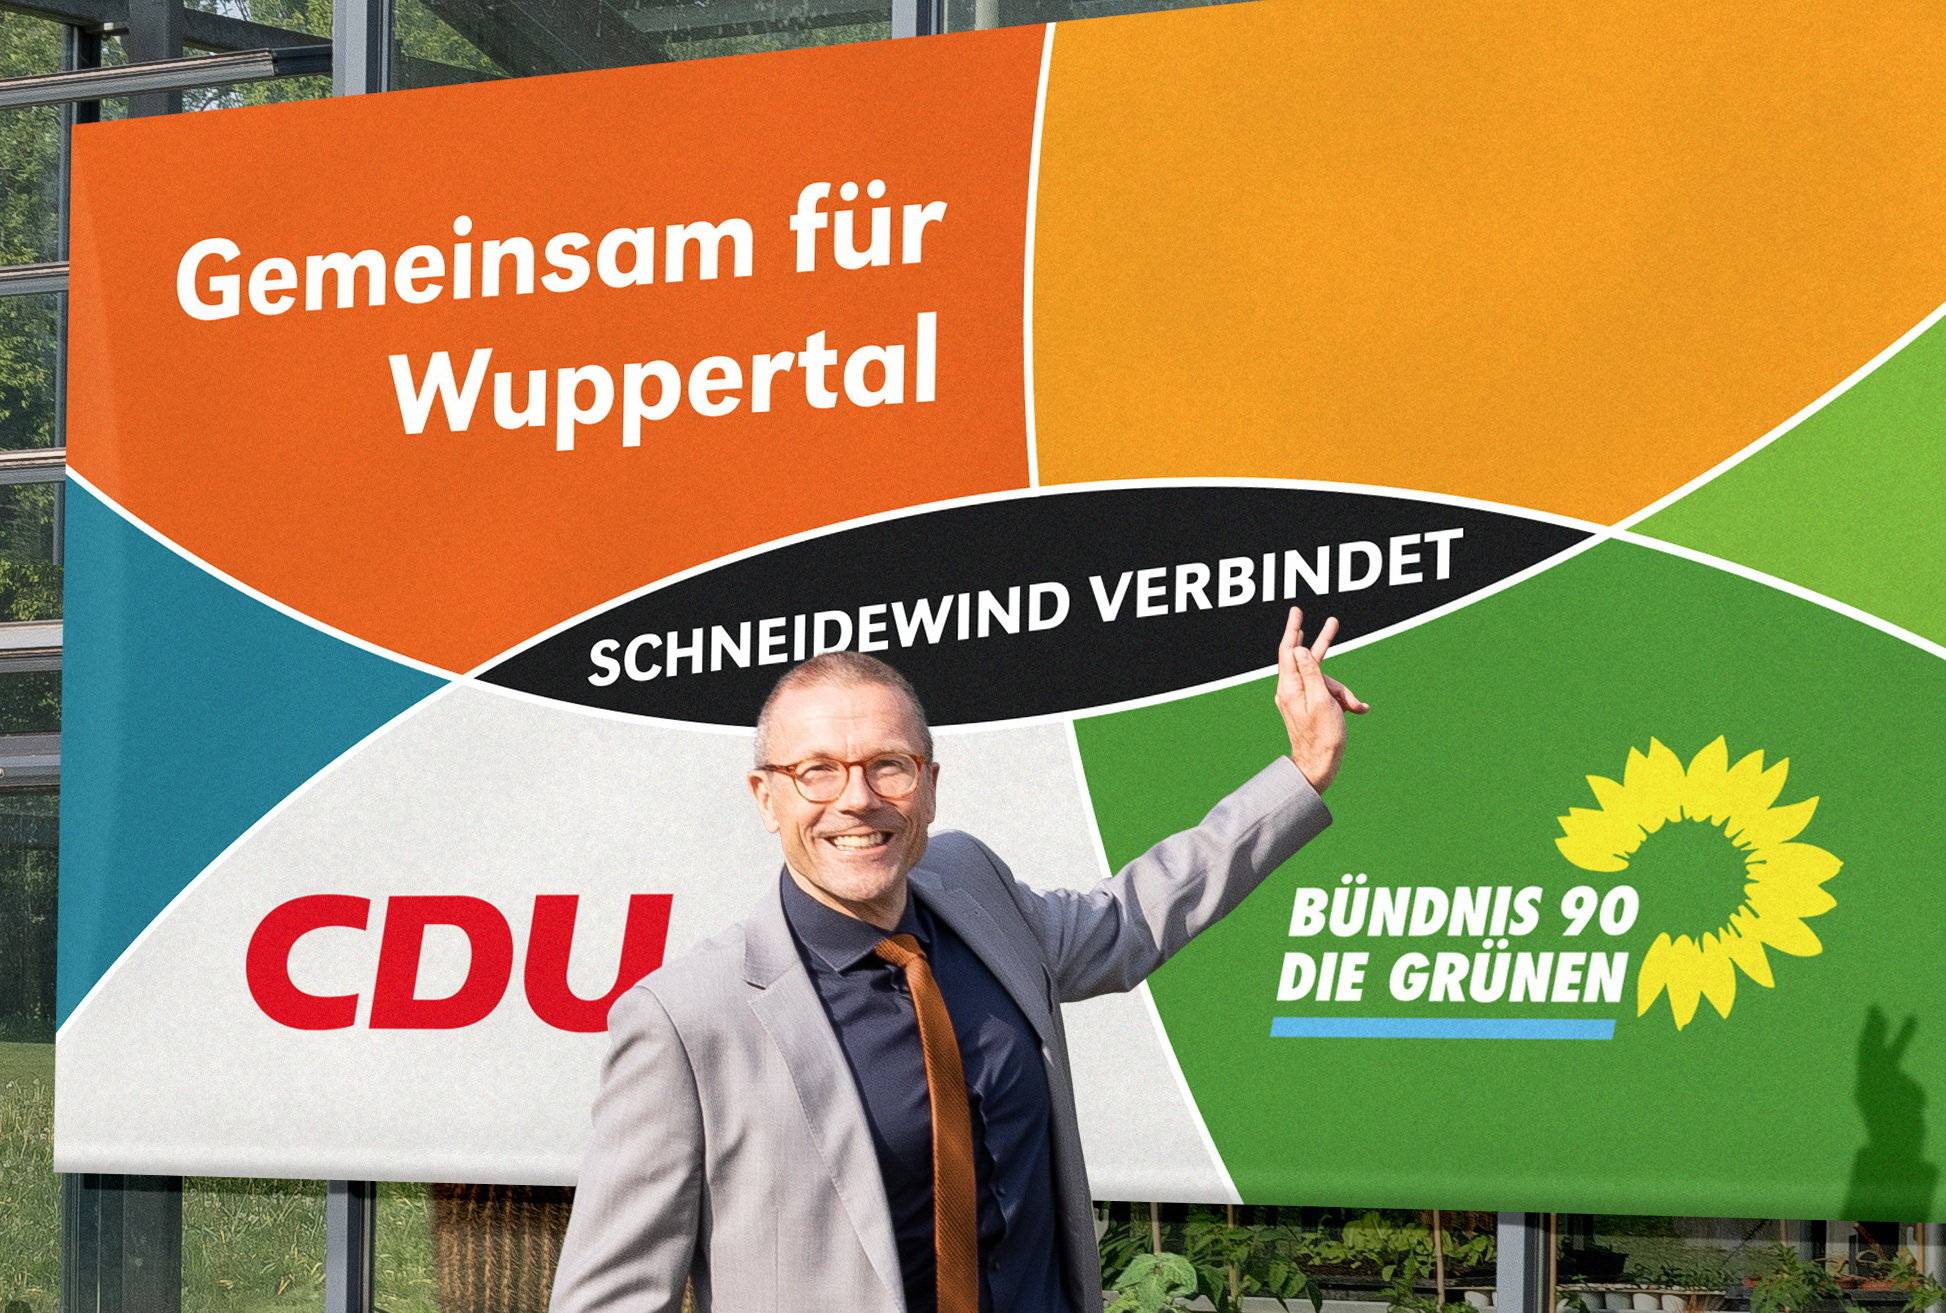  Uwe Schneidewind tritt für die CDU und die Grünen an. 